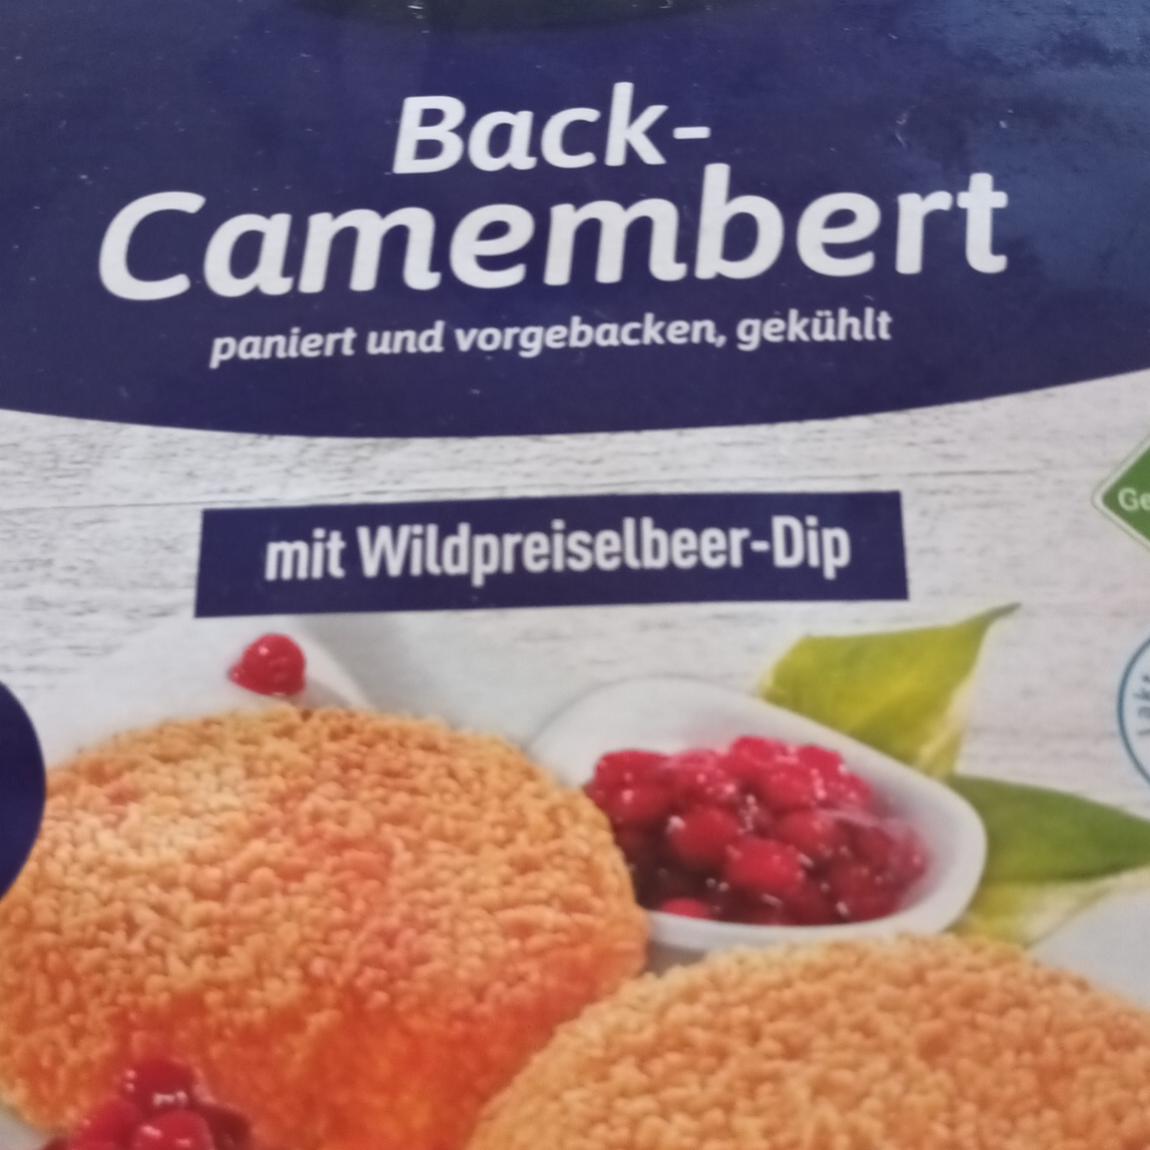 Fotografie - Back-camembert mit Wildpreiselbeer-Dip Hofburger